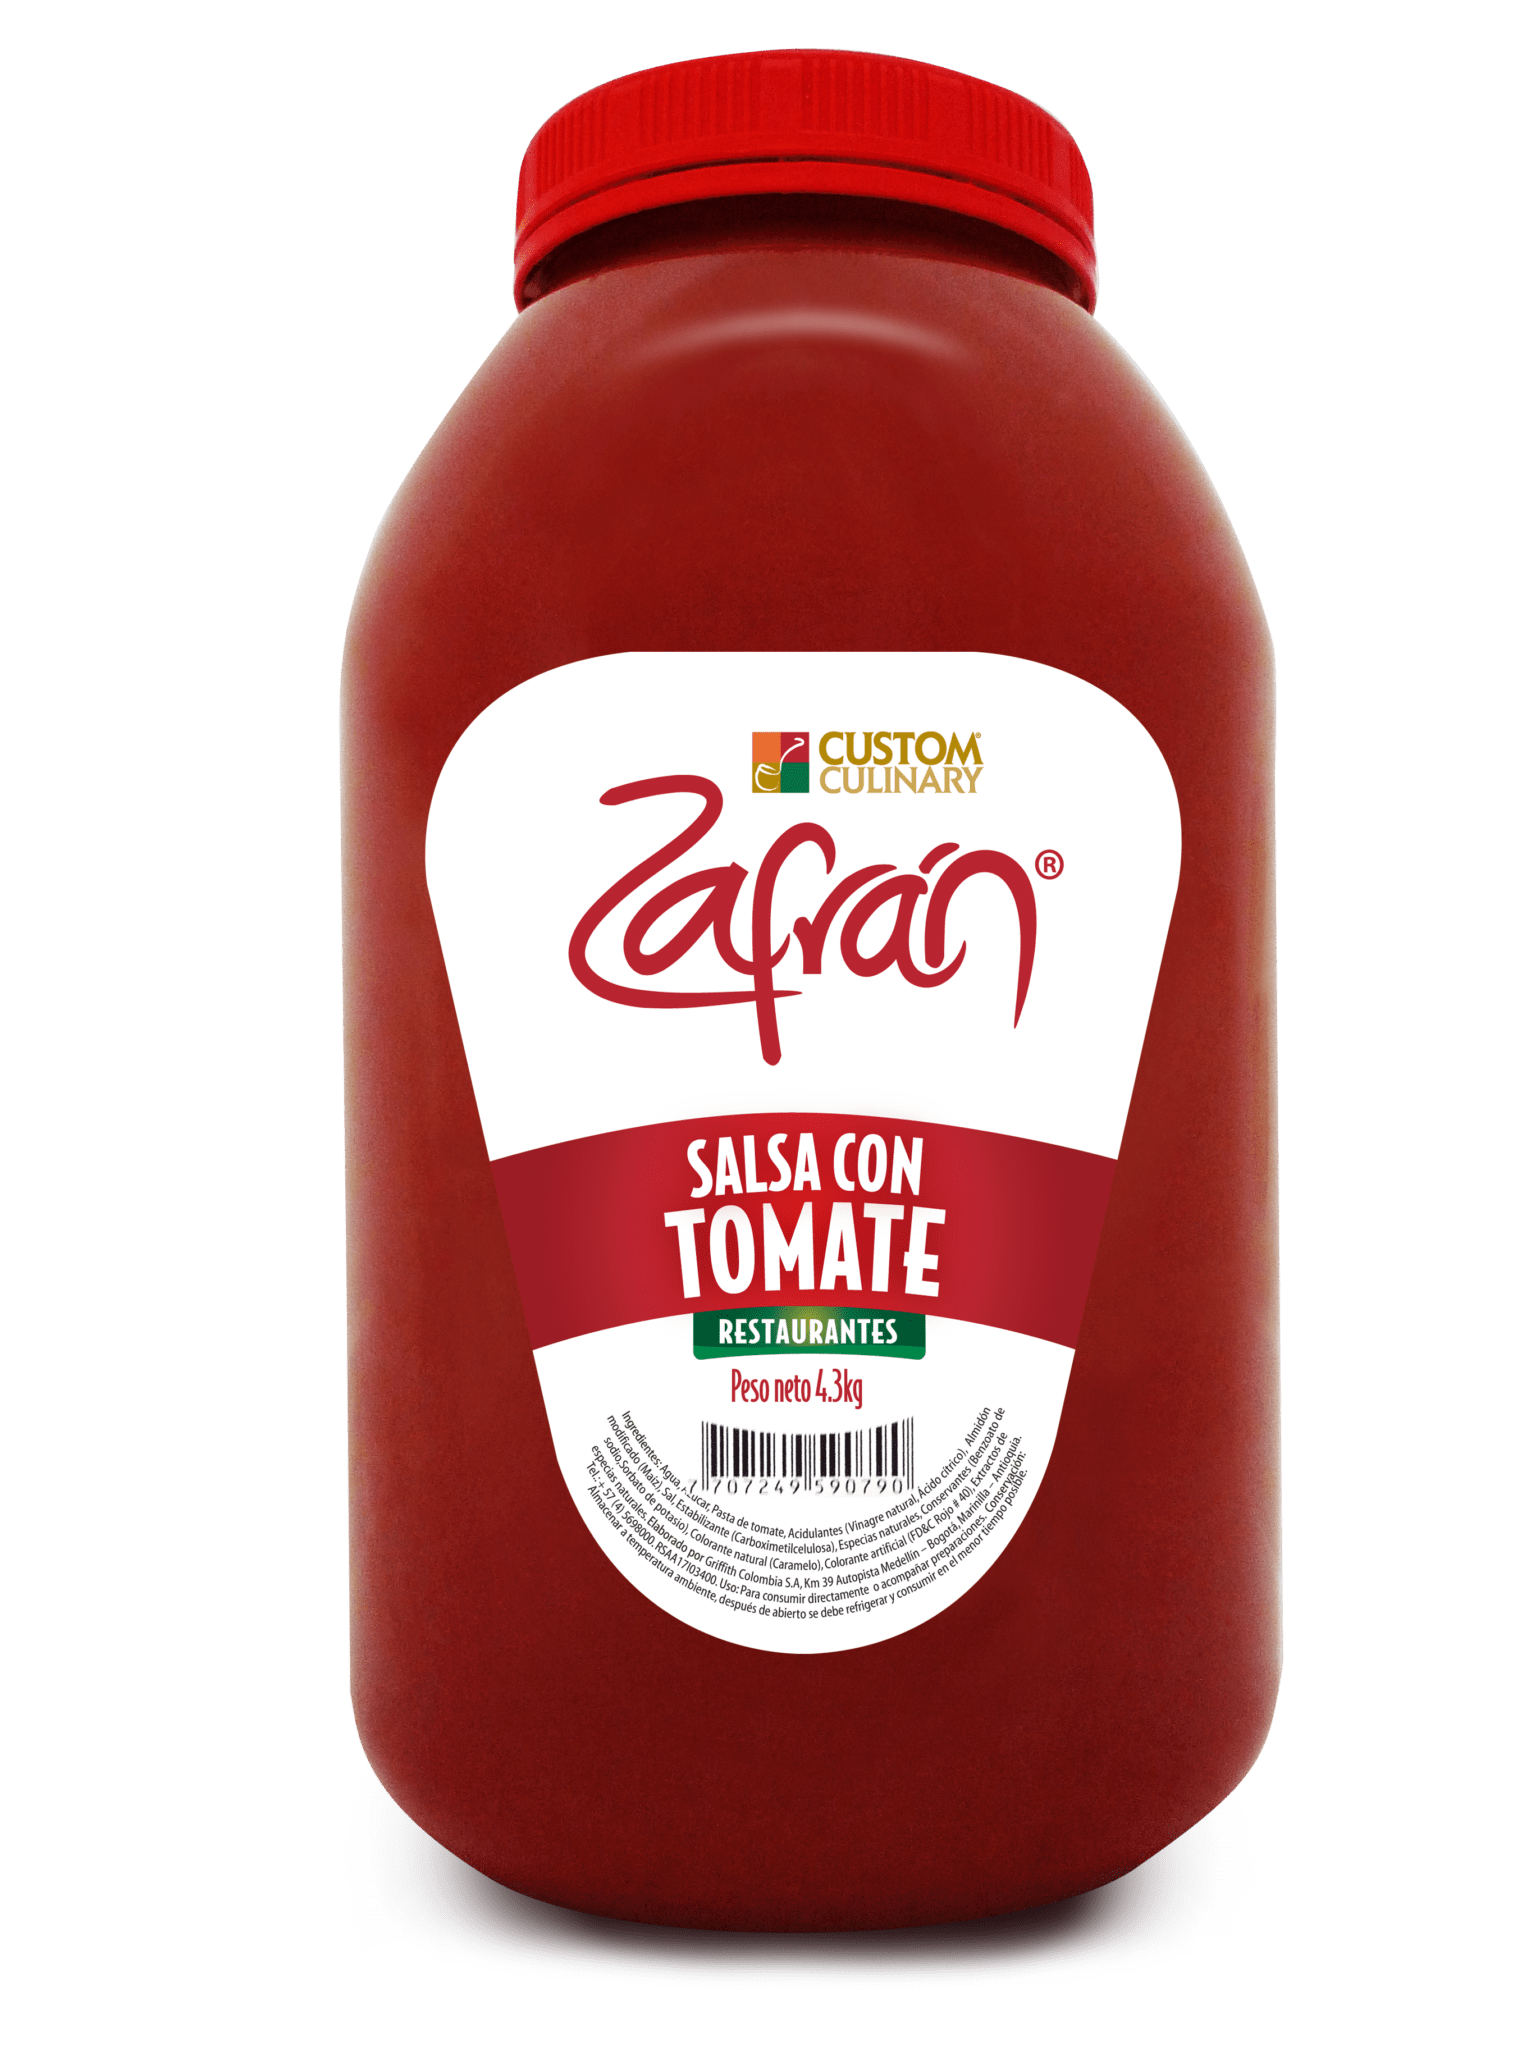 Deliciosa salsa con tomate para restaurantes en garrafa, para restaurantes